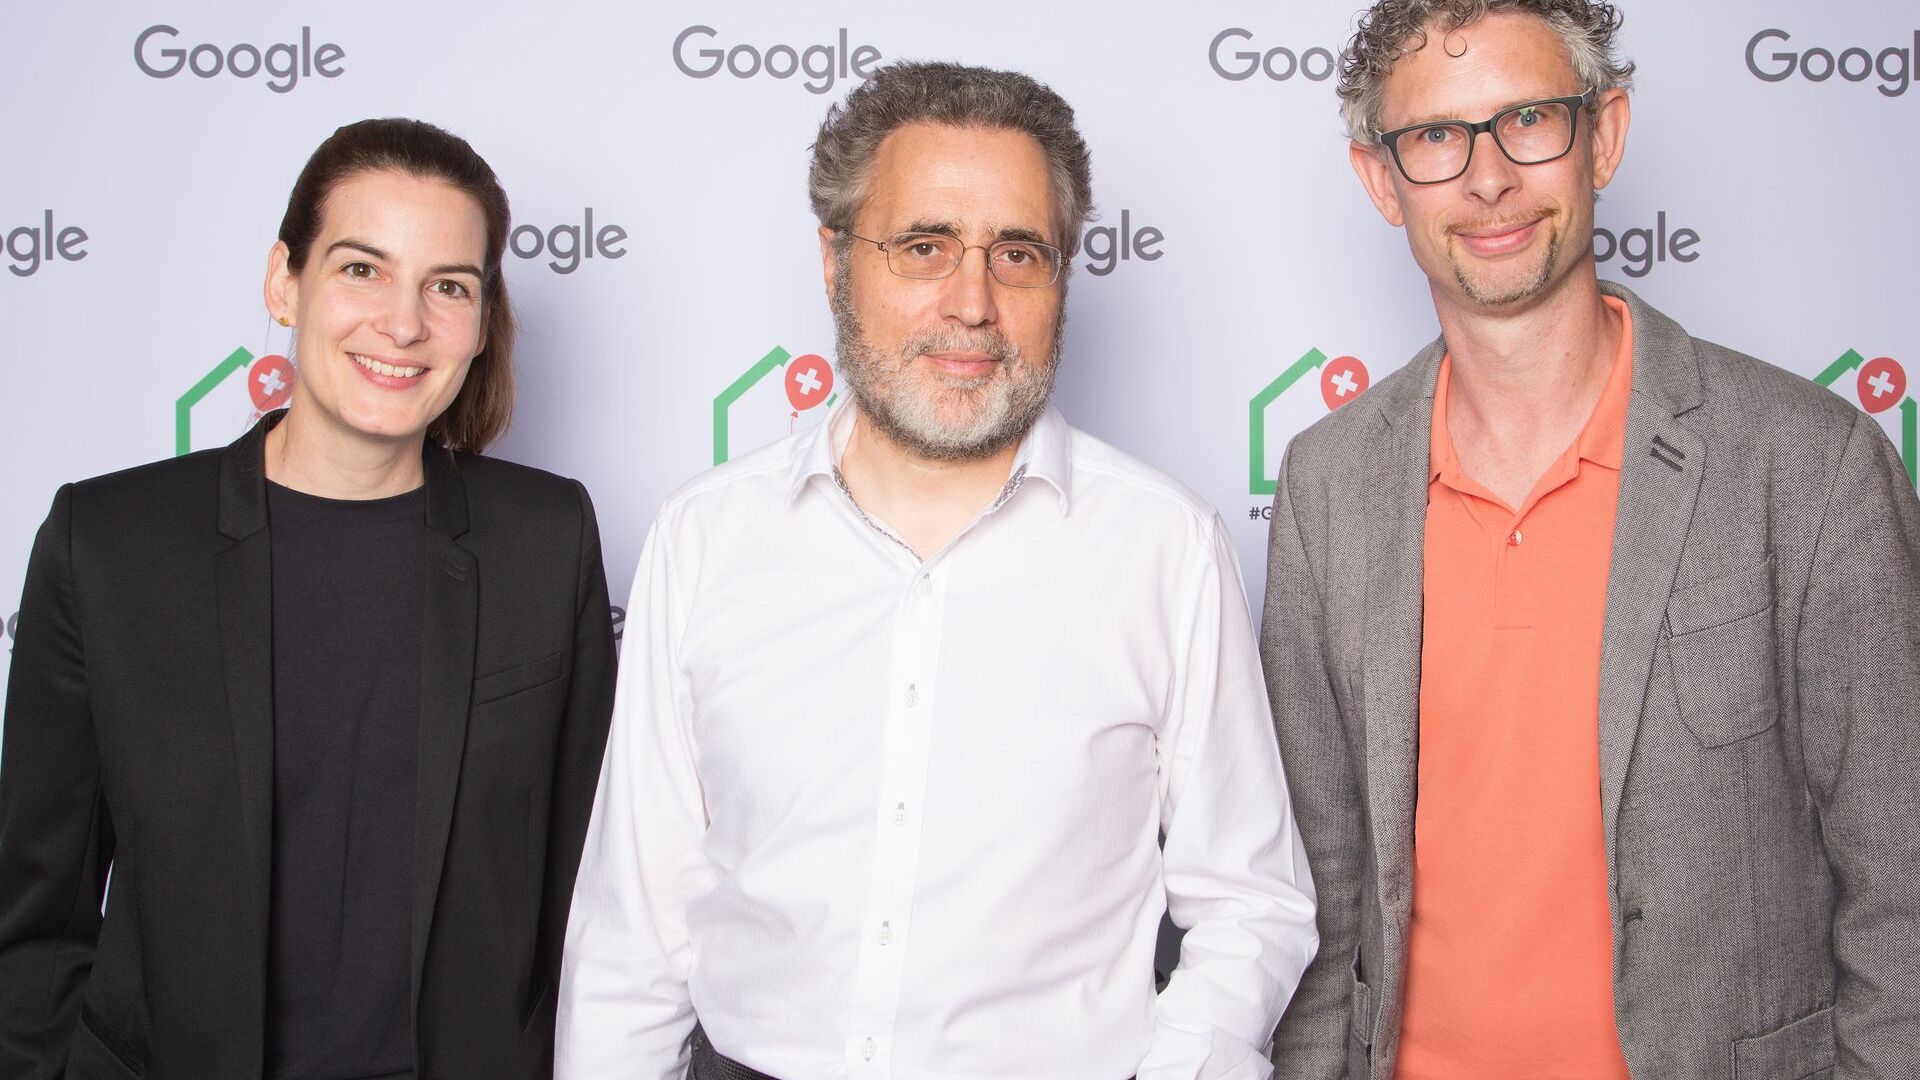 Ο Urs Hölzle, Ανώτερος Αντιπρόεδρος τεχνικής υποδομής, και οι Pia De Carli και Samuel Leiser, ομάδα μέσων ενημέρωσης στην Ελβετία, παρευρέθηκαν στα επίσημα εγκαίνια του νέου Campus Europaallee της Google στη Ζυρίχη στις 27 Ιουνίου 2022